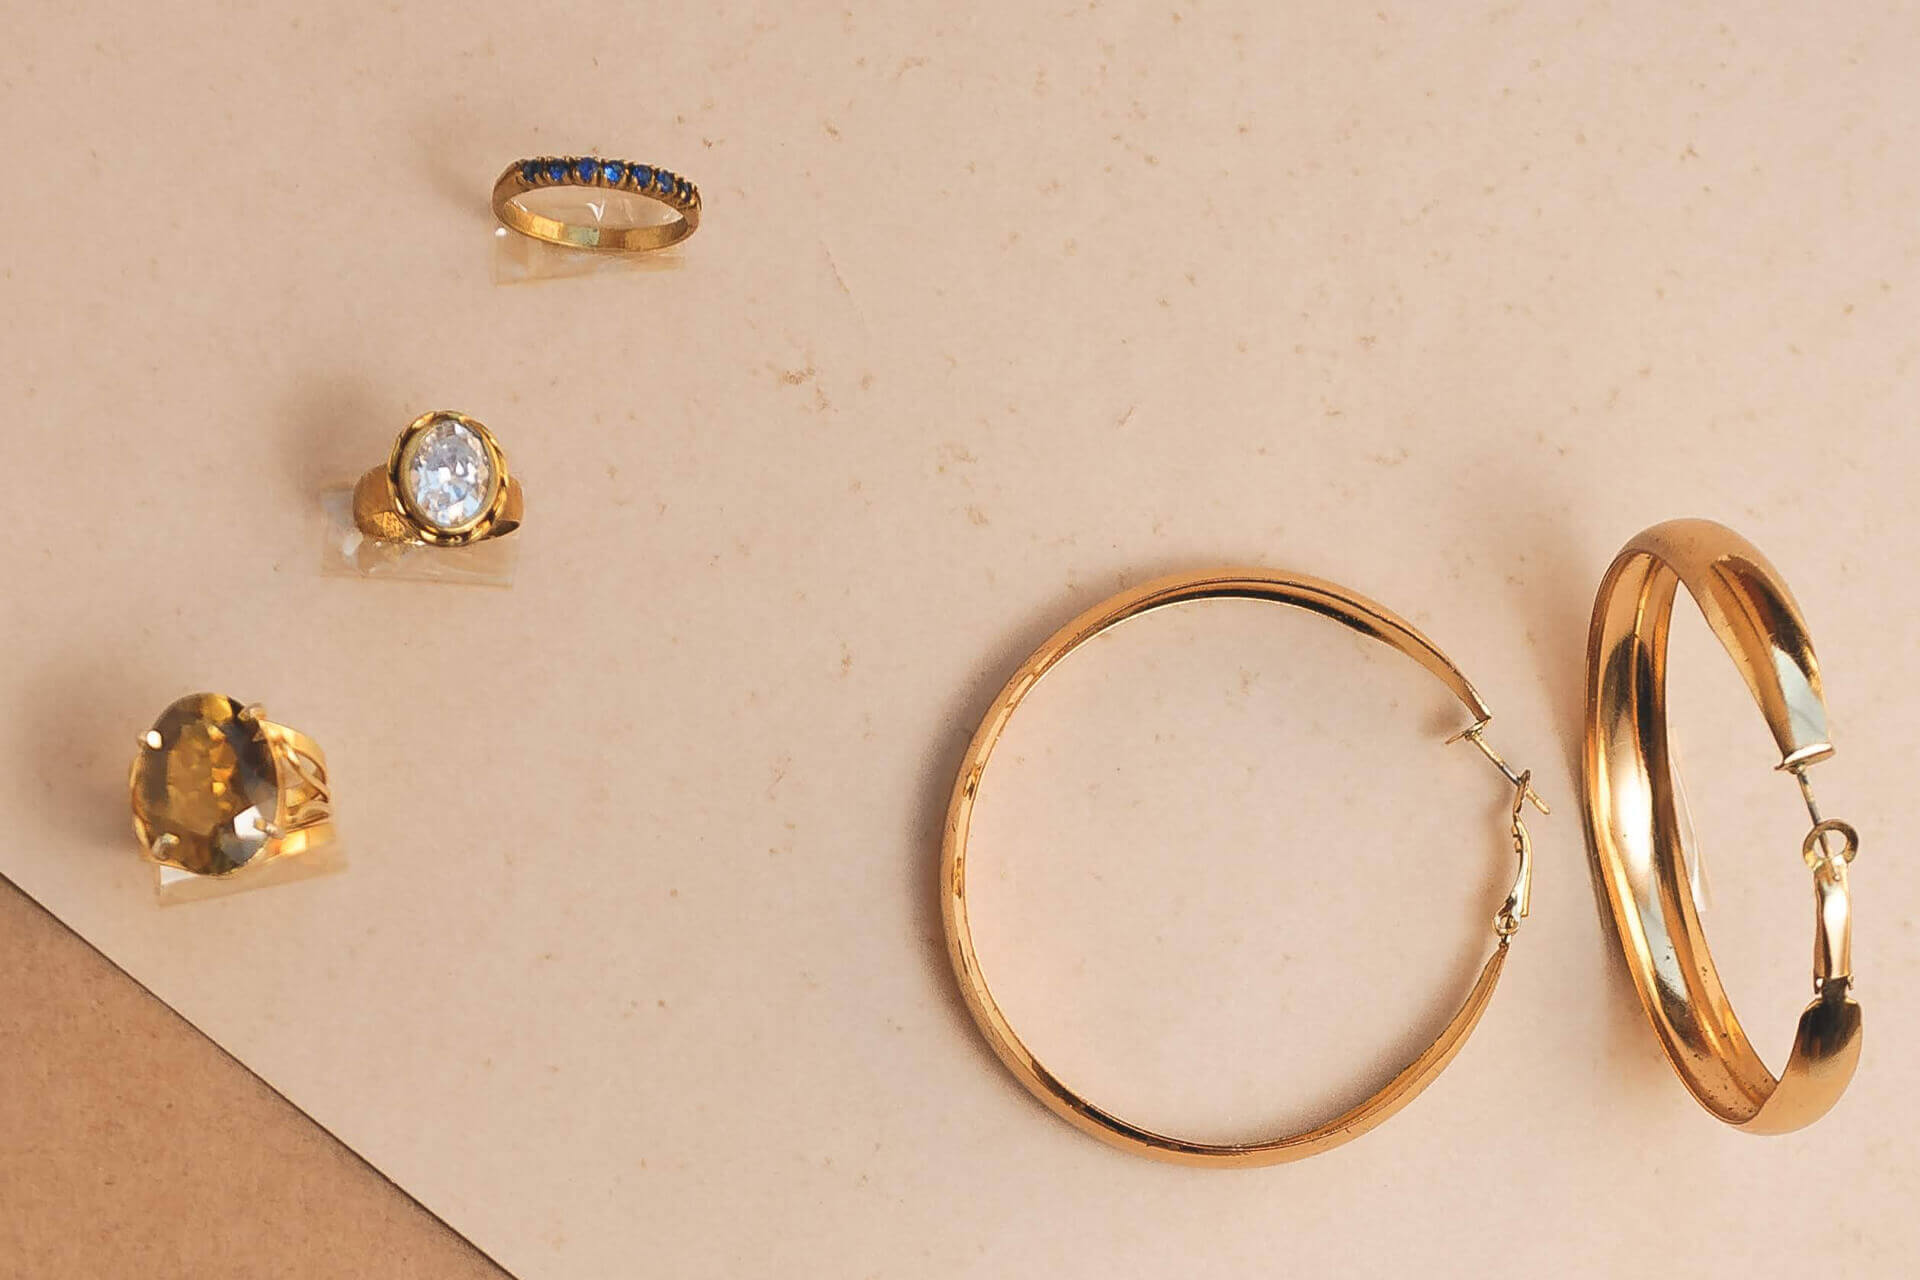 Handgefertigte Schmuckstücke wie goldene Ringe und Armreifen mit eingearbeiteten Edelsteinen auf einem Samttuch präsentiert.